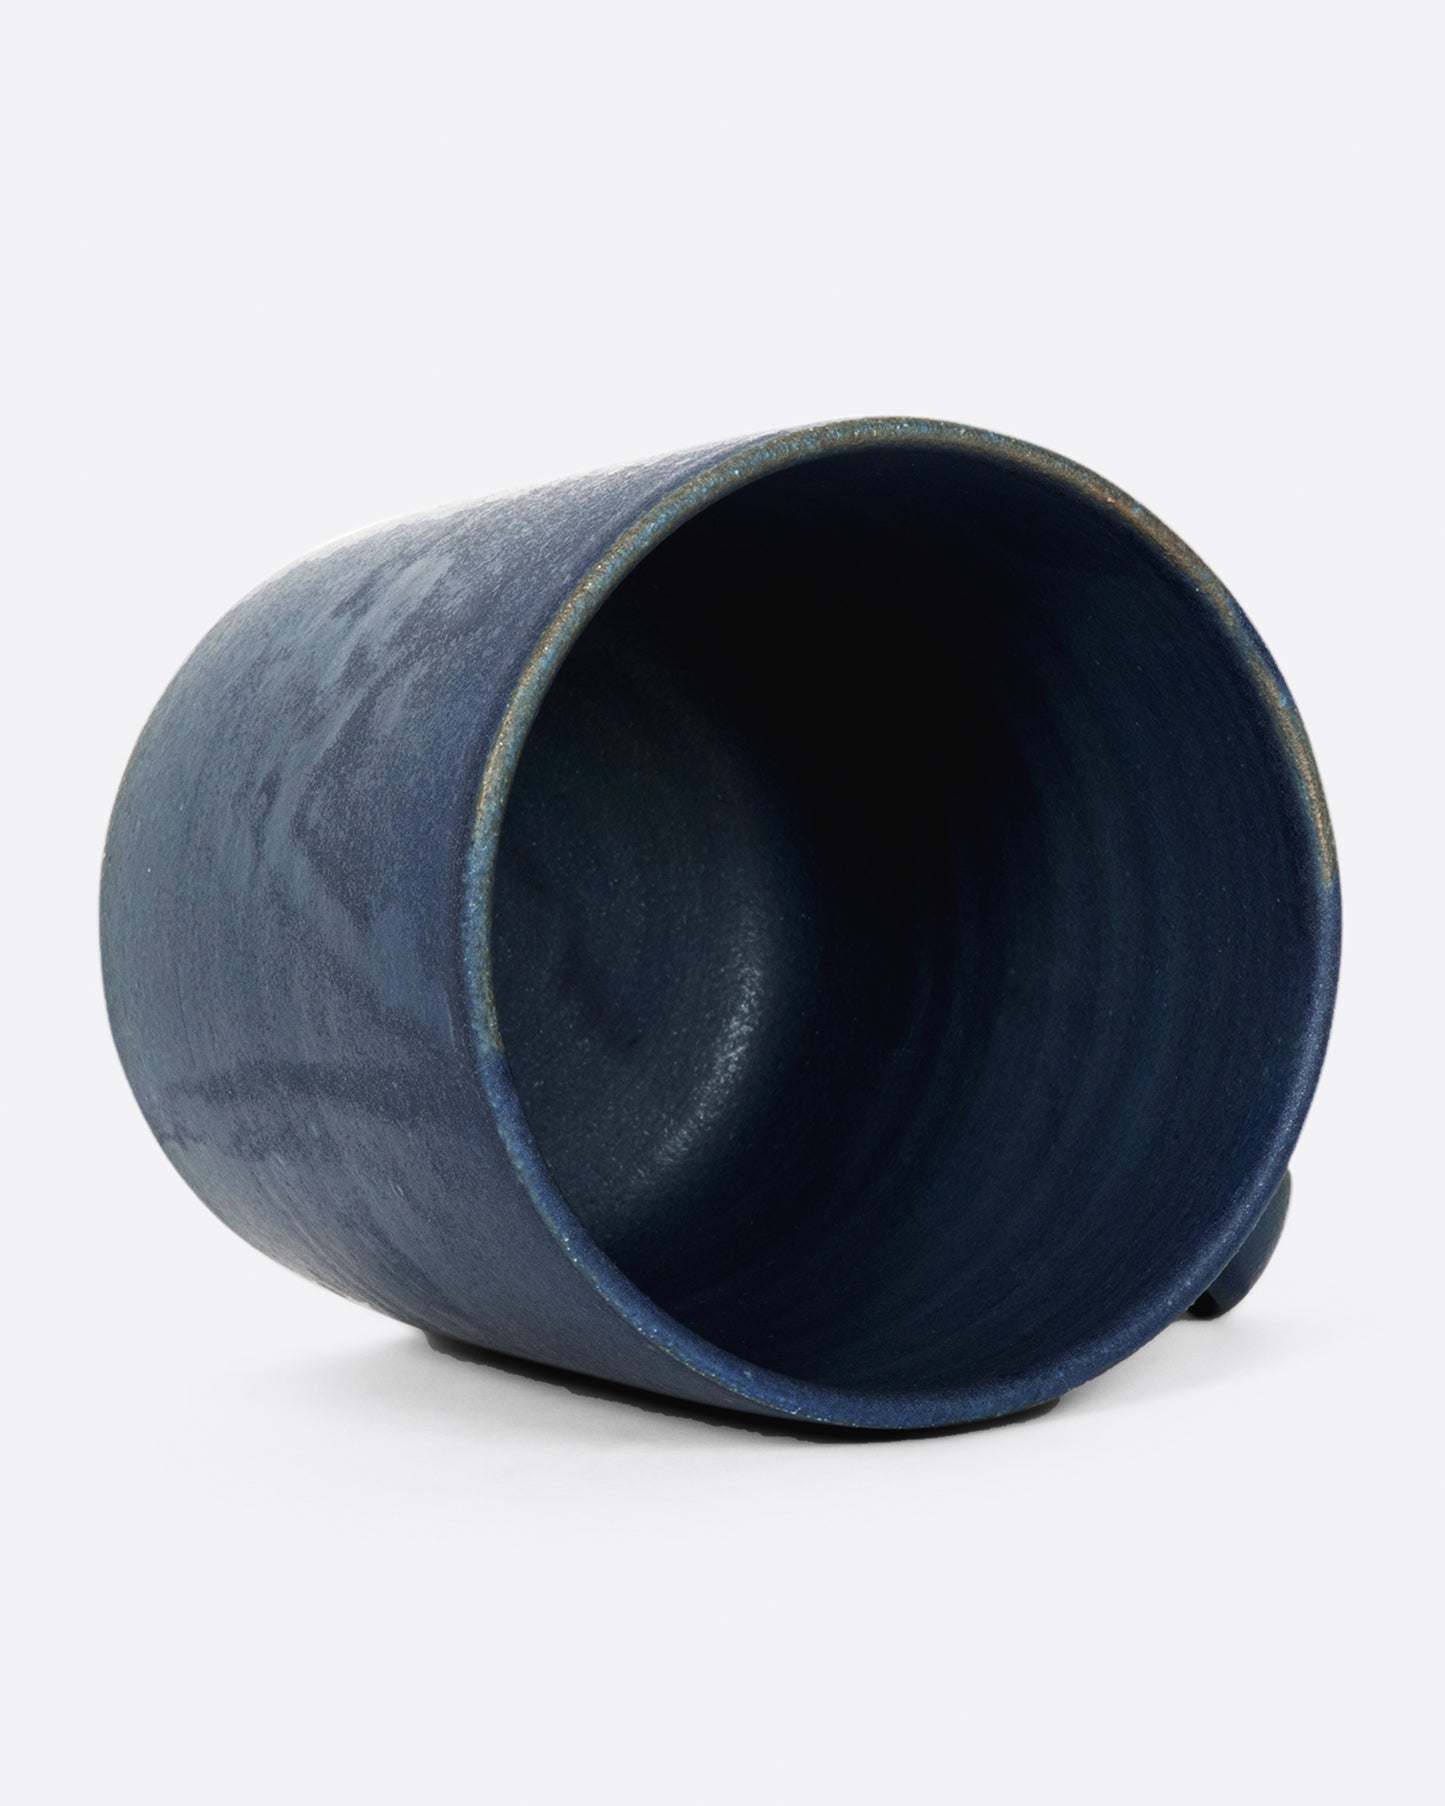 A hand thrown ceramic mug with a matte, deep blue glaze.